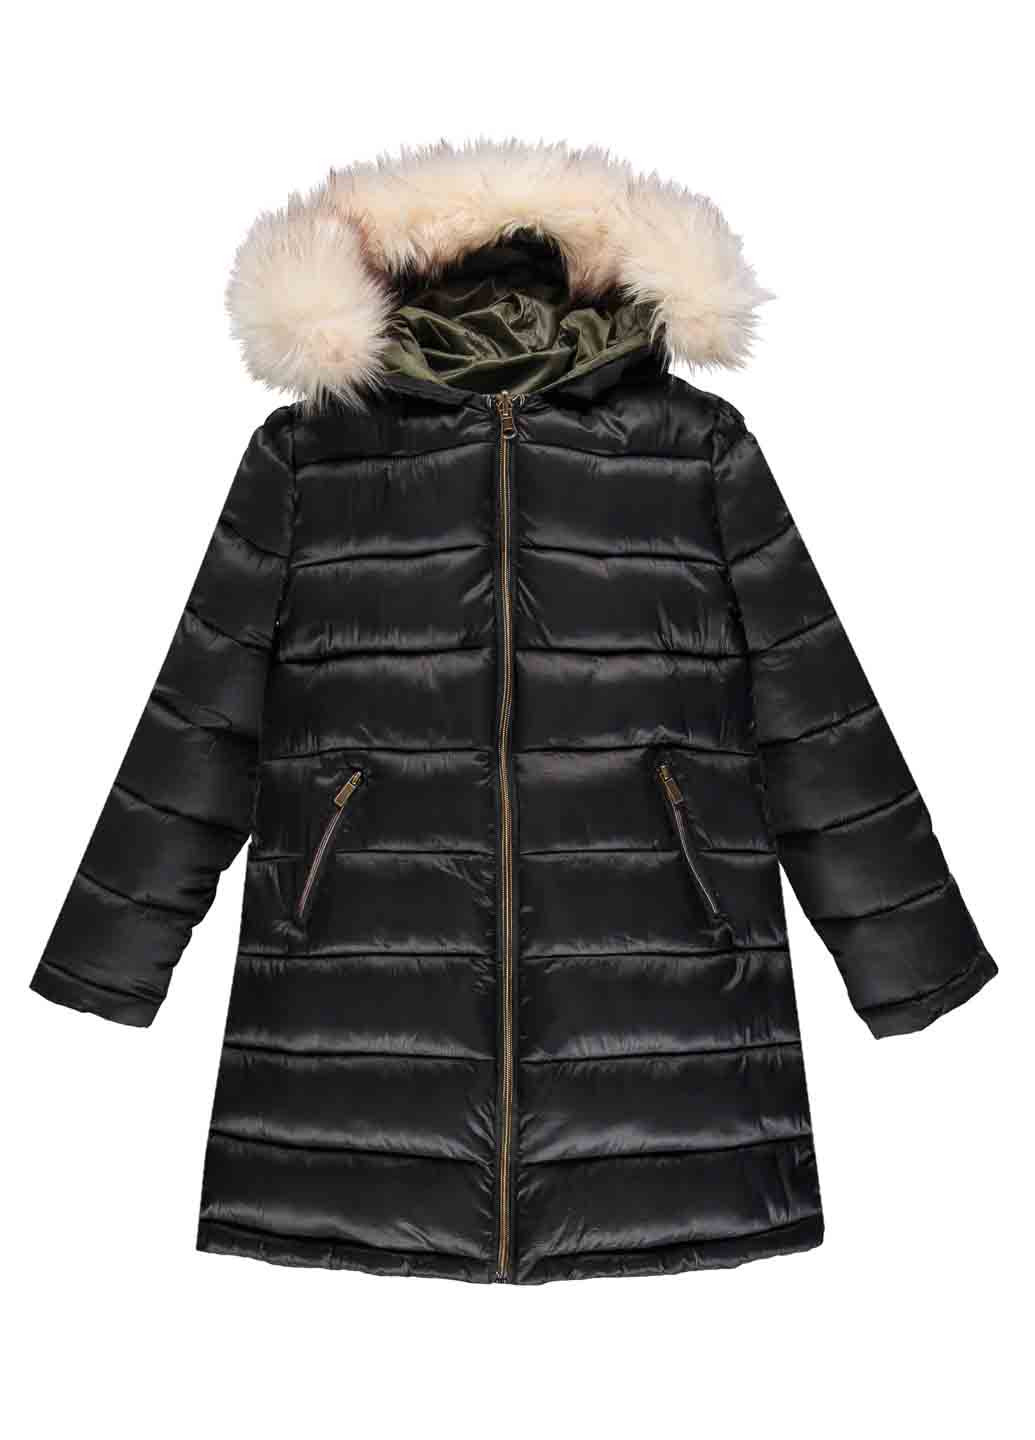 Комбинированная зимняя куртка двухсторонняя MEK